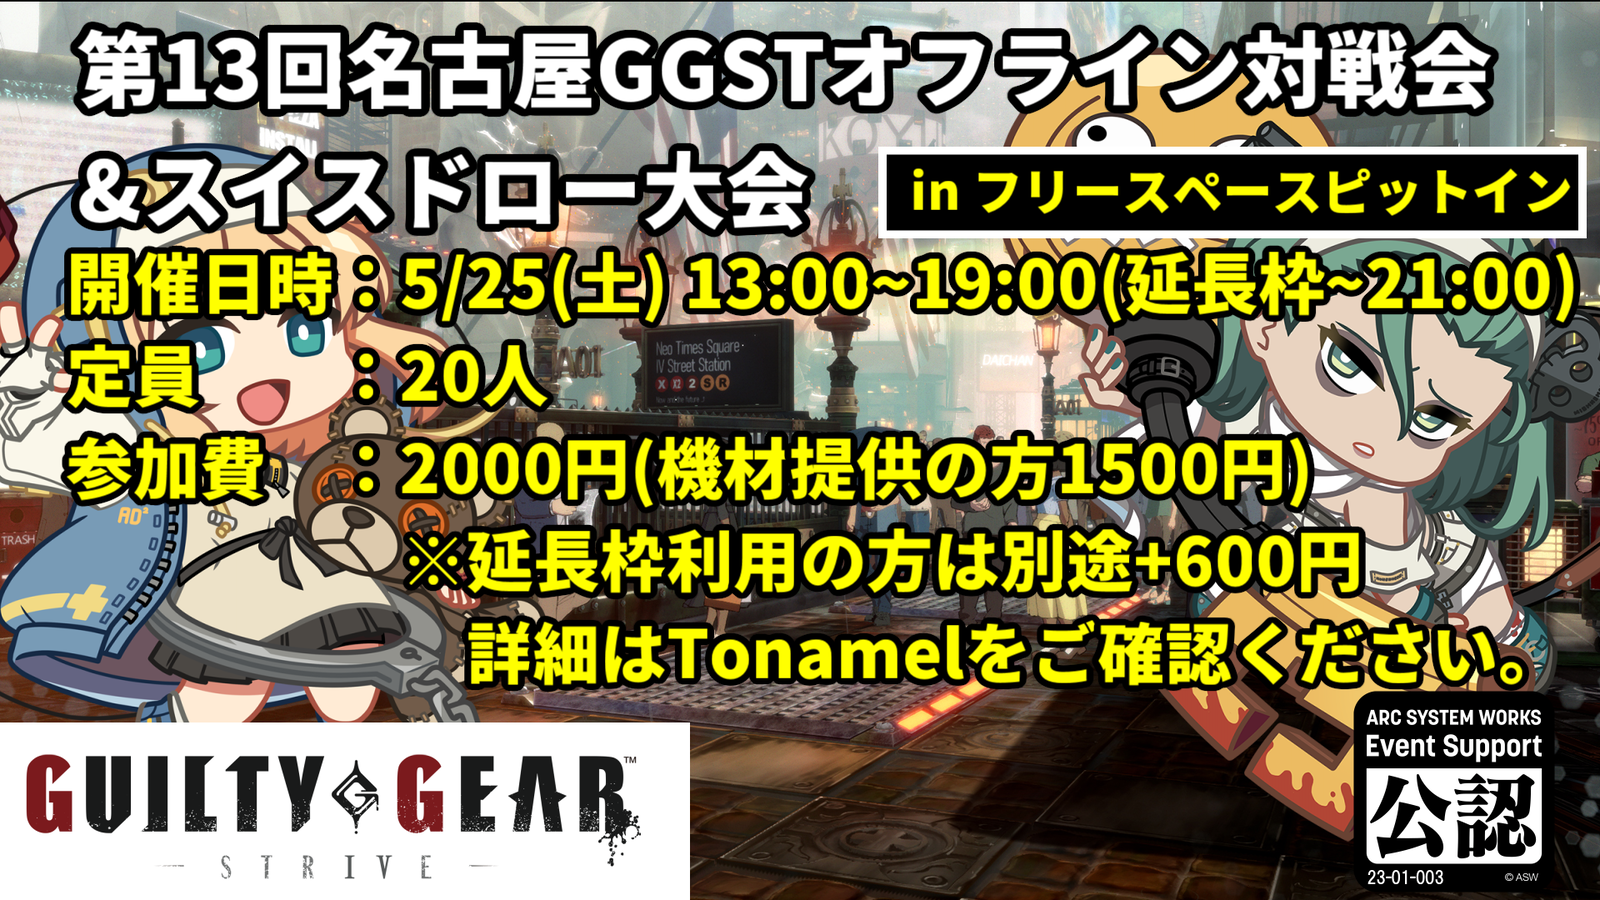 【GGST】第13回名古屋GGSTオフライン対戦会